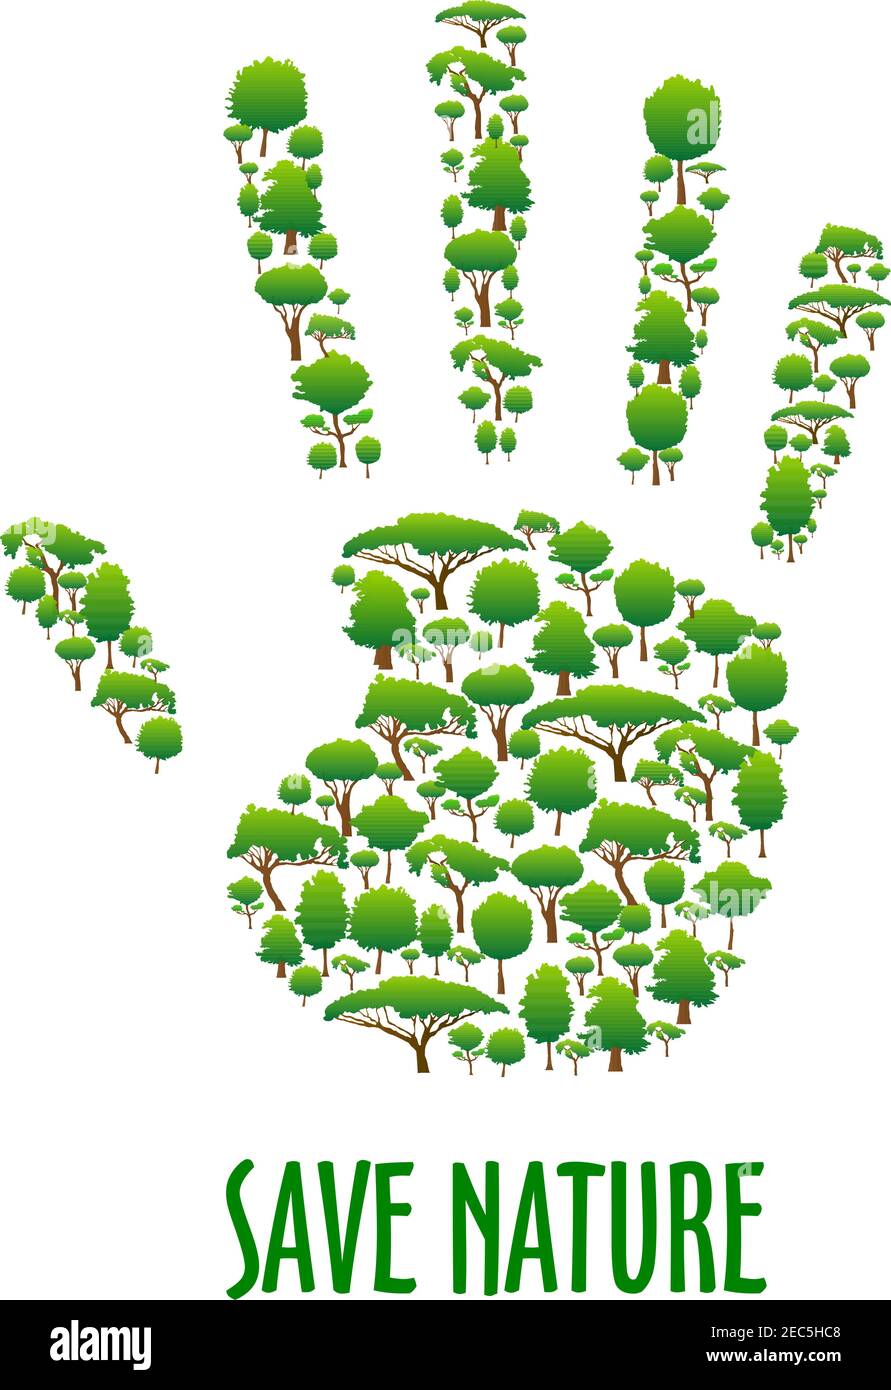 Natur Retten. Poster zum Umweltschutz. Grünes Öko Handsymbol aus